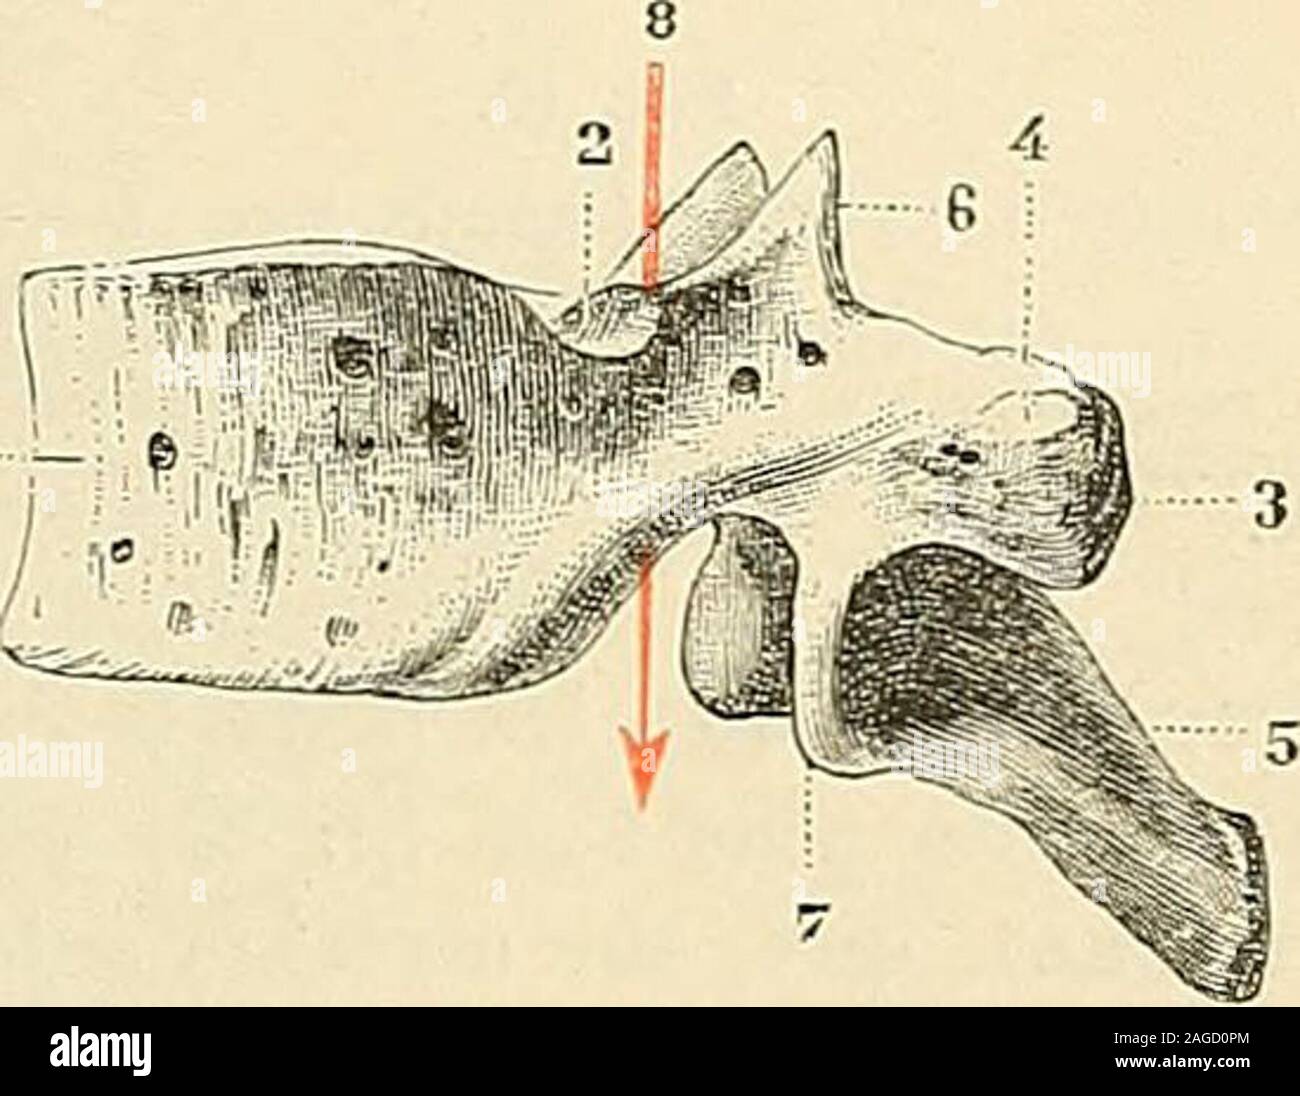 . Traité d'anatomie humaine : anatomie descriptive, histologie, développement. Fig. 35. Première vertèbre dorsale, vue latérale. 1, corps. — L2. 2, ses crochets latéraux. — 3, facettearticulaire supérieure pour la tète de la première côte. -4. demi-facette articulaire inférieure pour la deuxième cjle. — 5, apophyse épineuse. — 6, apophyse articulairesjpéricurc. — 7, apophyse articulaire- inférieure. Fig. 39. Dixième vertèbre dorsale, vue latérale. i, corps, — 2, demi-facette articulaire supérieurepour Ja tète de la dixième cite. — 3, apophyse trans-verse, avec 4, sa facette articulaire pour la Stock Photo